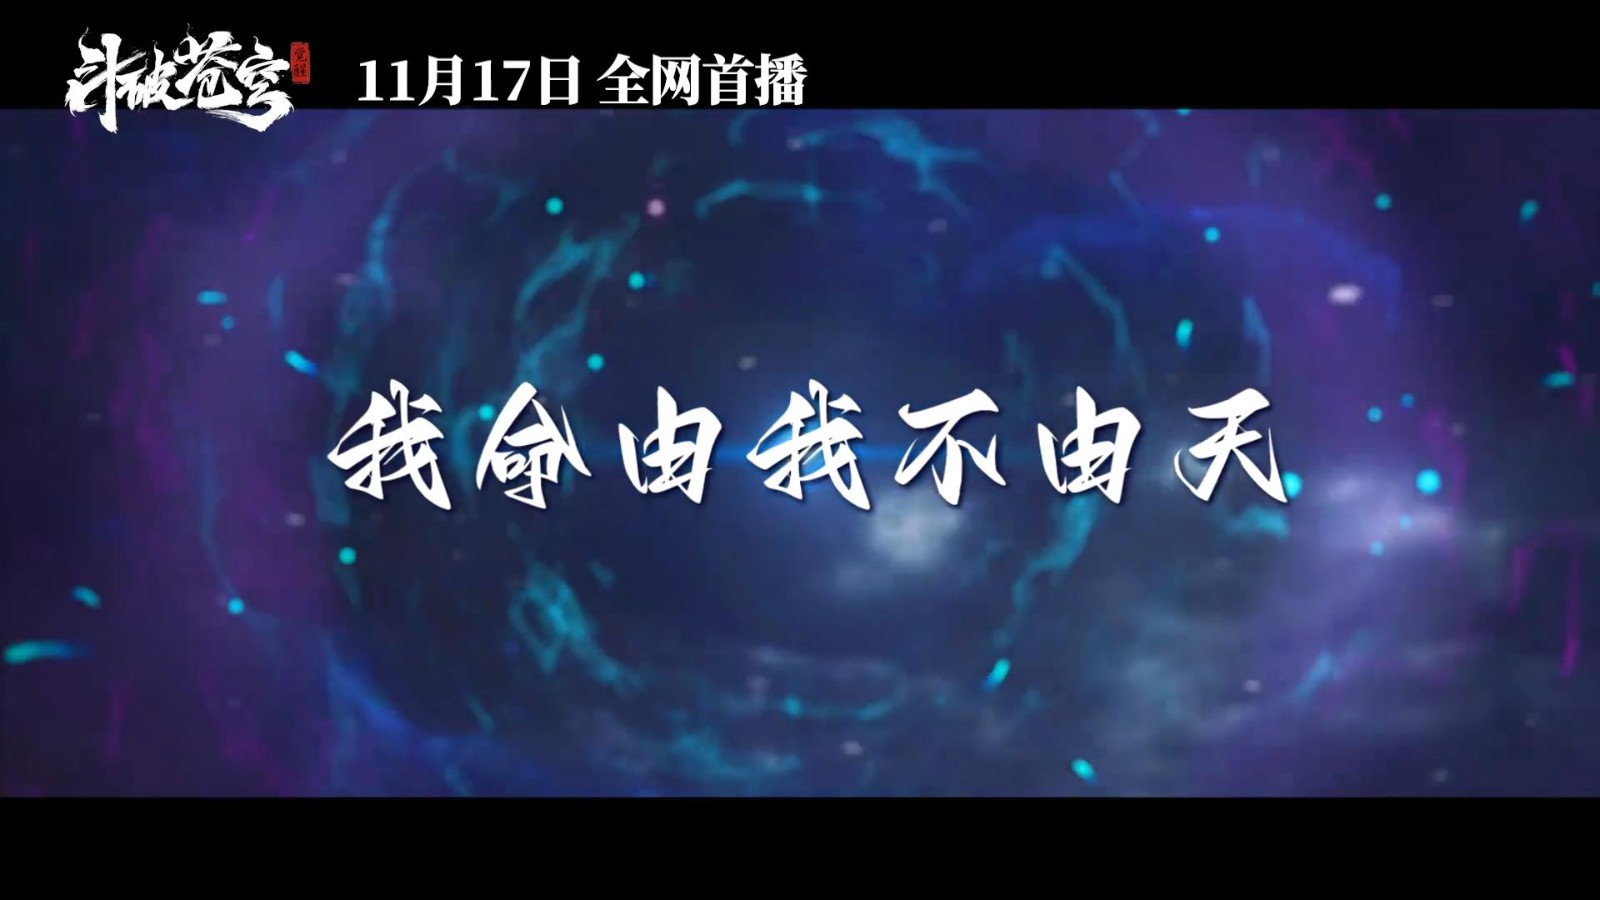 《斗破苍穹》真人电影预告 11月17日在三大平台上映